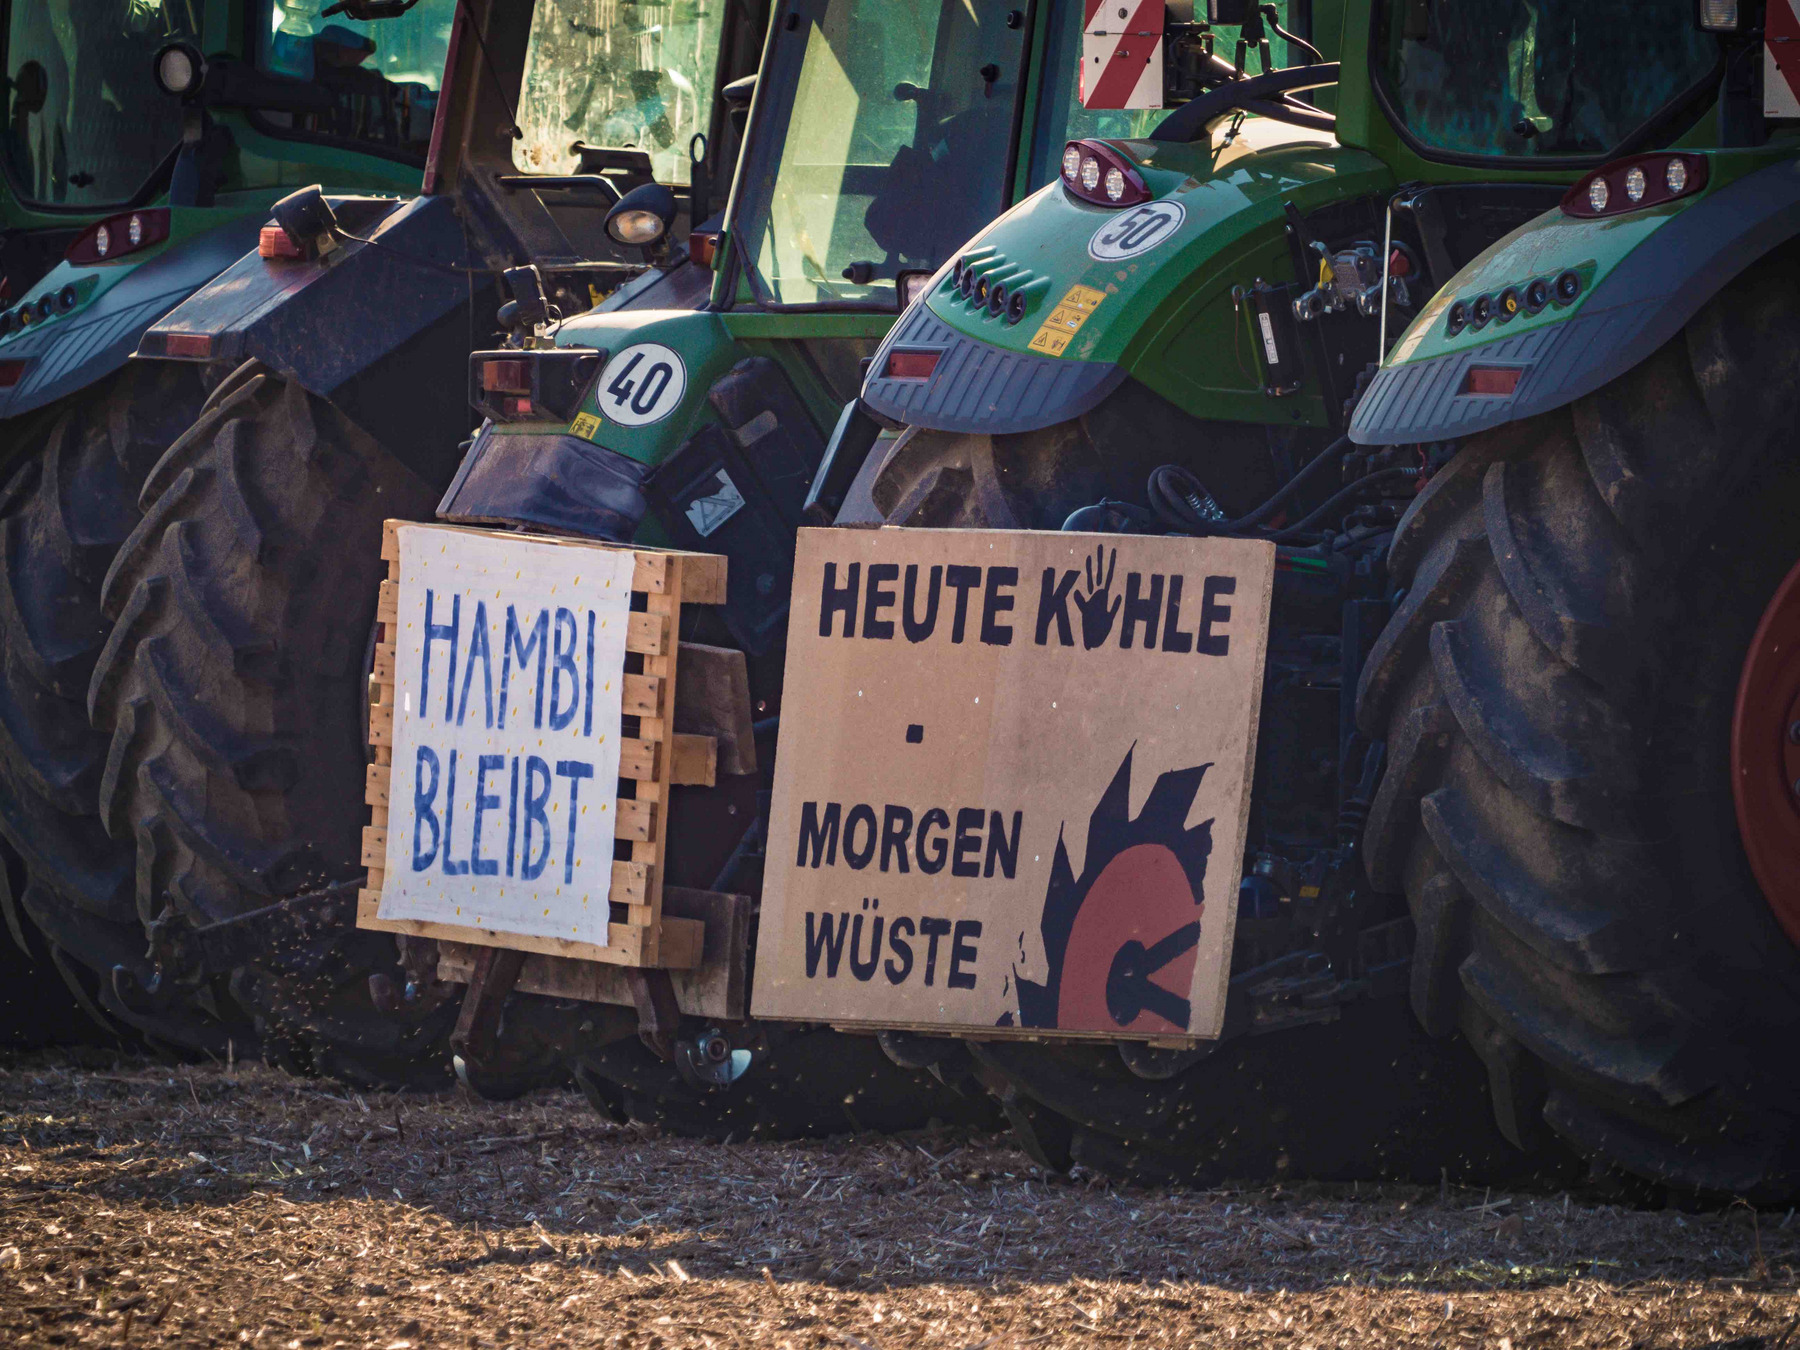 Traktoren und zwei Schilder mit Text: "Hambi bleibt" / "Heute Kohle – Morgen Wüste"